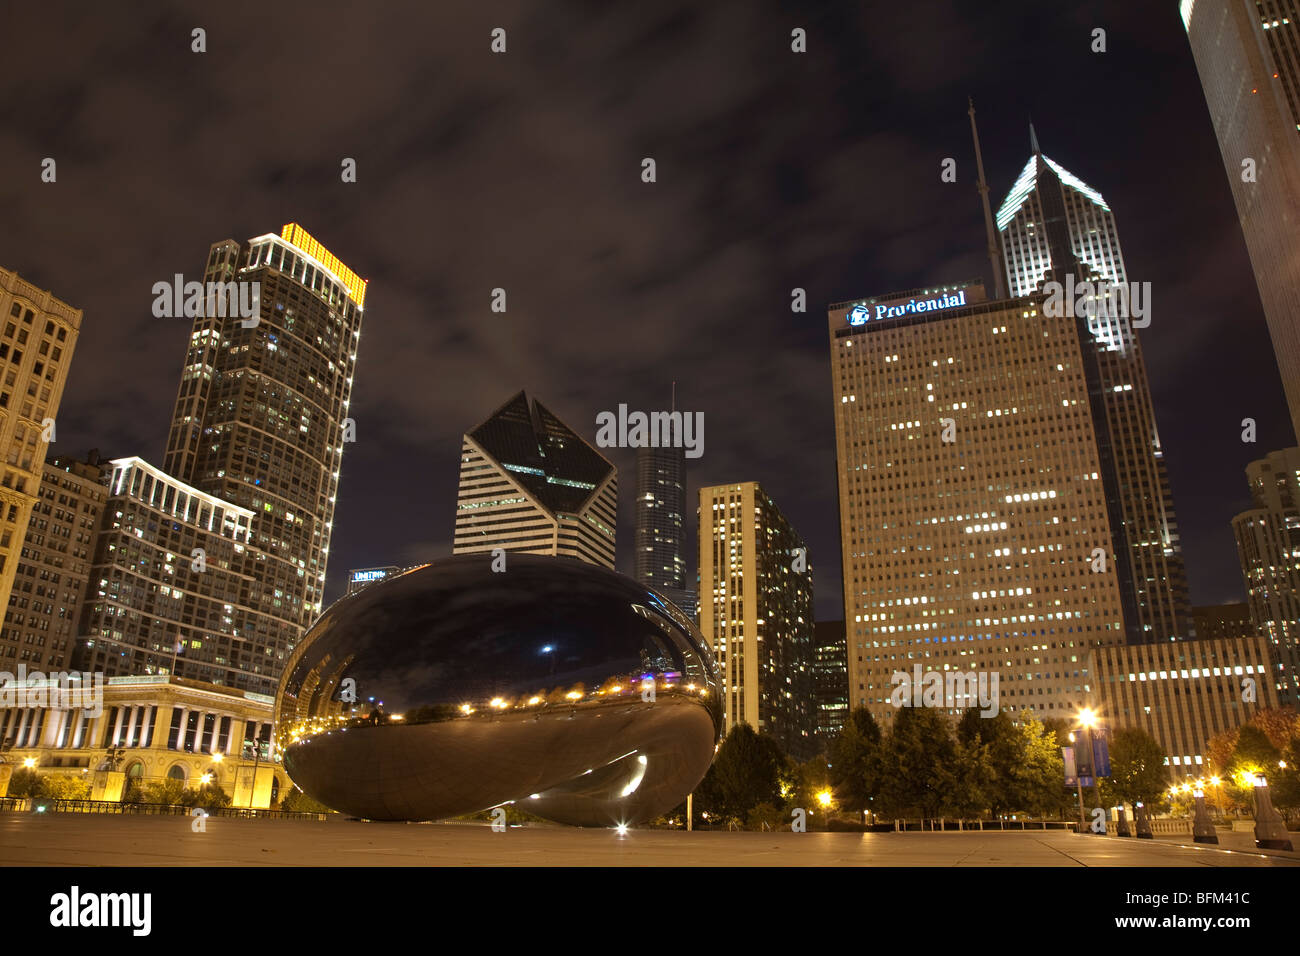 Il cloud gate o bean scultura di atrist Anish Kapoor AT&T Plaza in Millennium Park di Chicago di notte Foto Stock